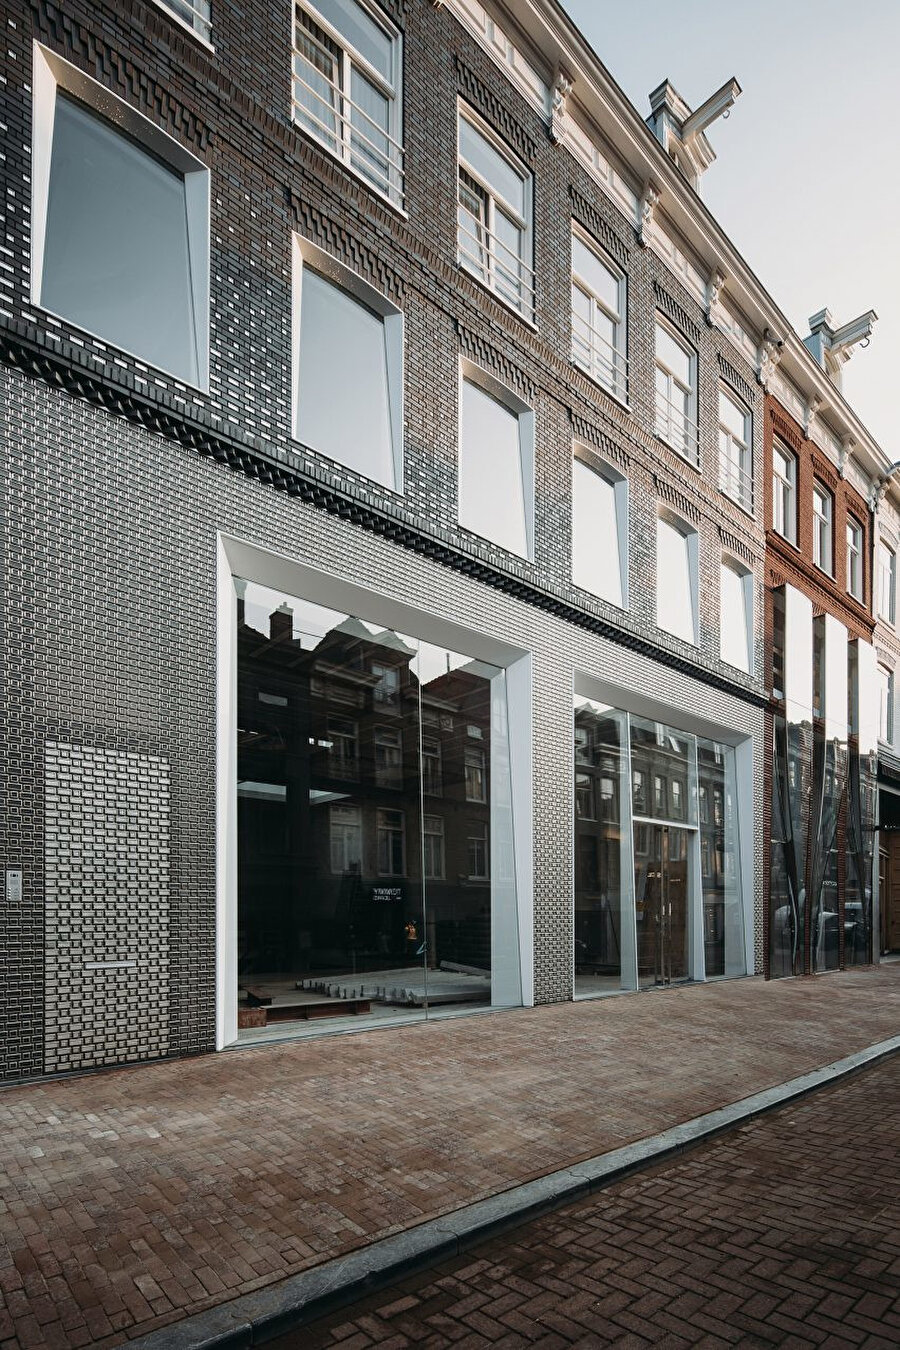 Mağazanın cephesinde, yaya seviyesinde cam kaplı özel döküm paslanmaz çelik tuğlalar bulunsa da ikinci katta geleneksel Hollanda evlerinde de bulunan tuğlalar bulunuyor. Böylelikle paslanmaz çelik tuğlaların oluşan cephesi, Amsterdam mimarisine ayak uyduruyor.n